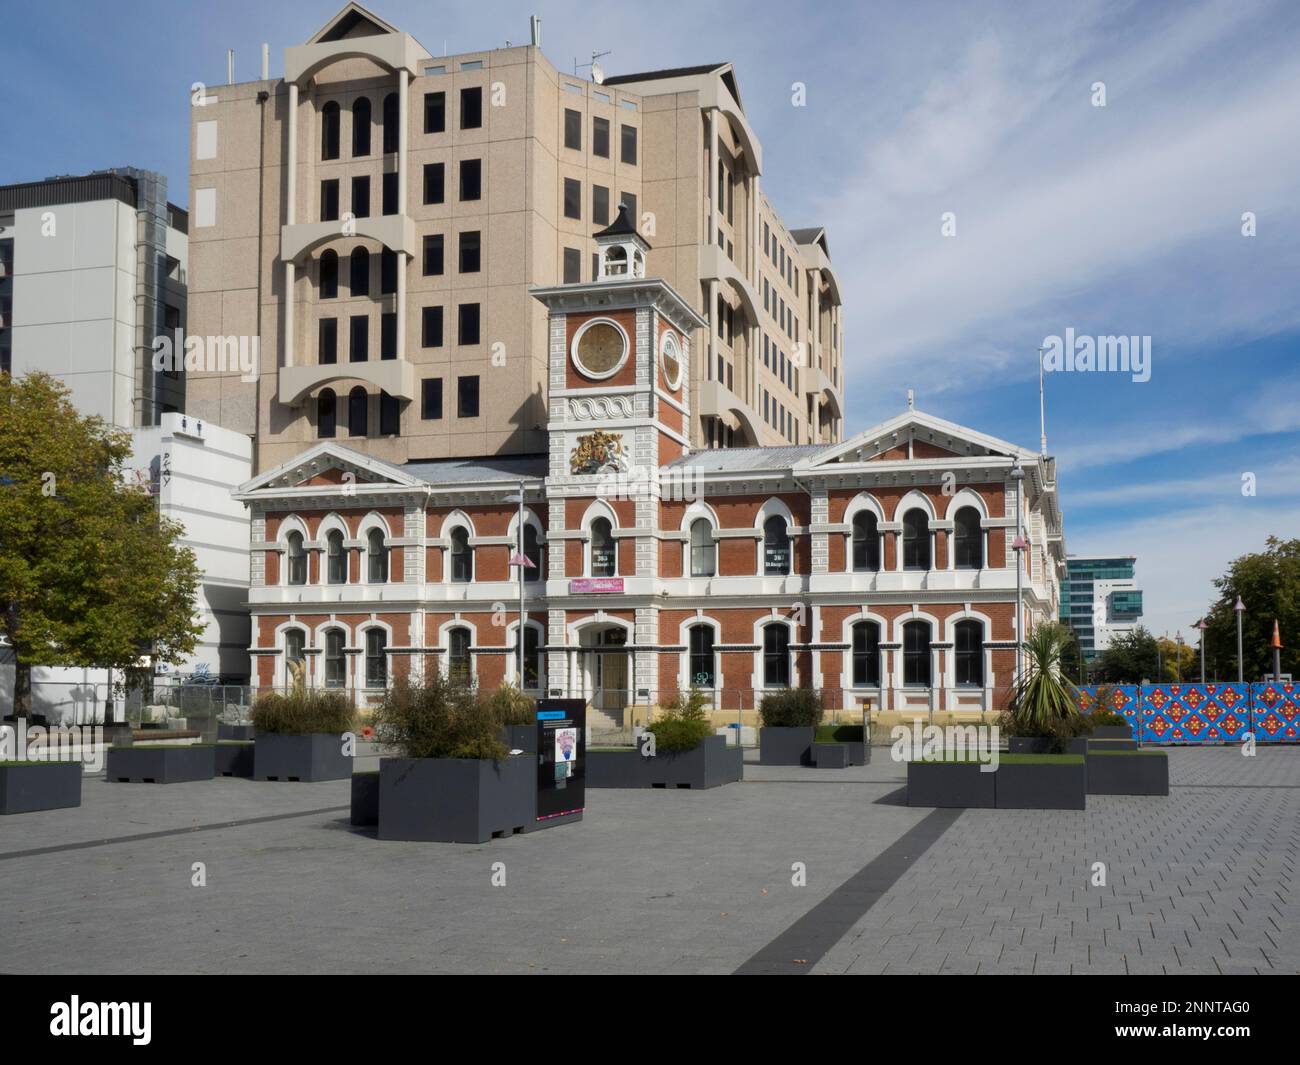 Façade du bâtiment de l'administration coloniale, Christchurch, Île du Sud, Nouvelle-Zélande Banque D'Images